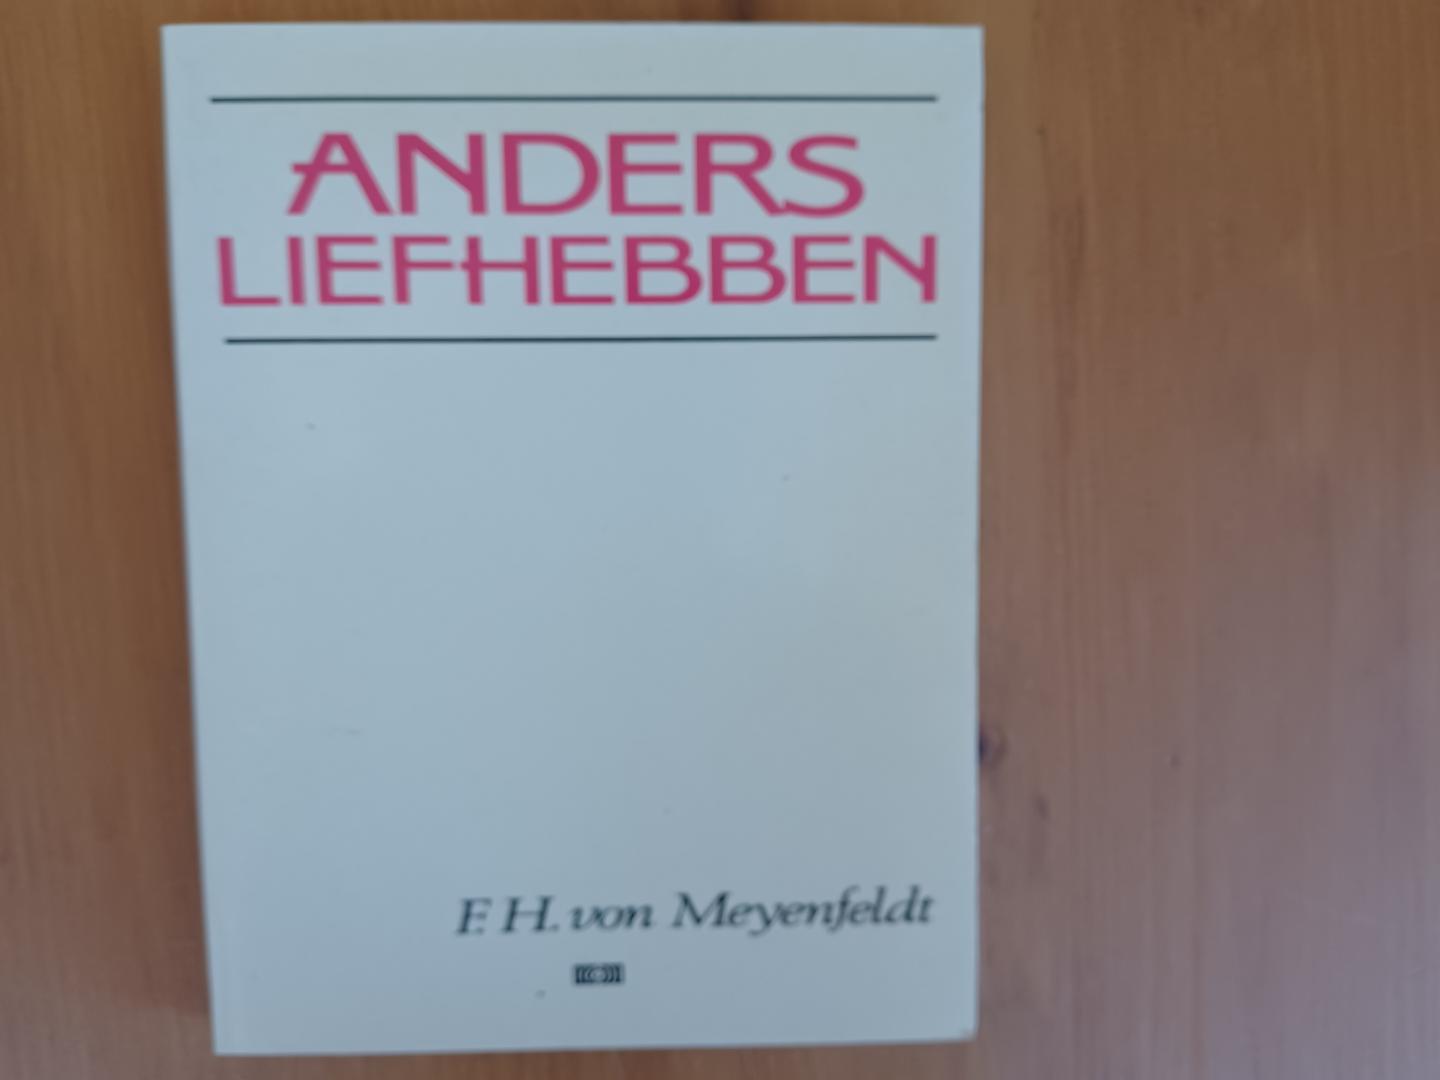 Meyenfeldt, F.H. von - Anders liefhebben